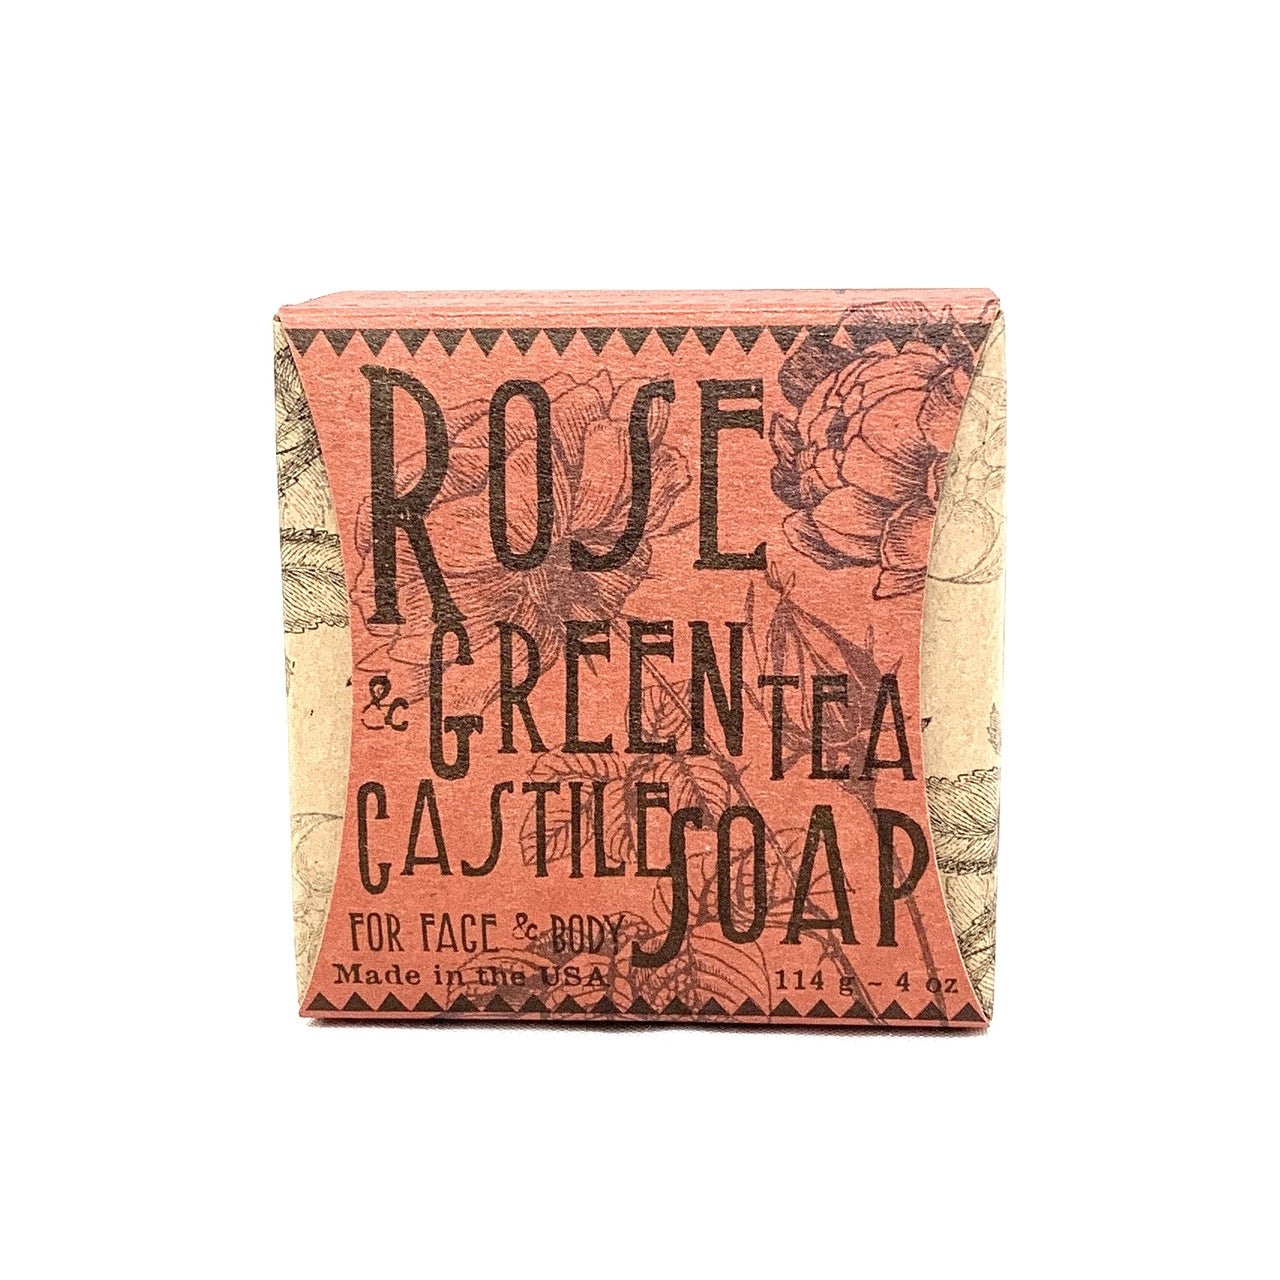 Rose & Green Tea Castile Soap